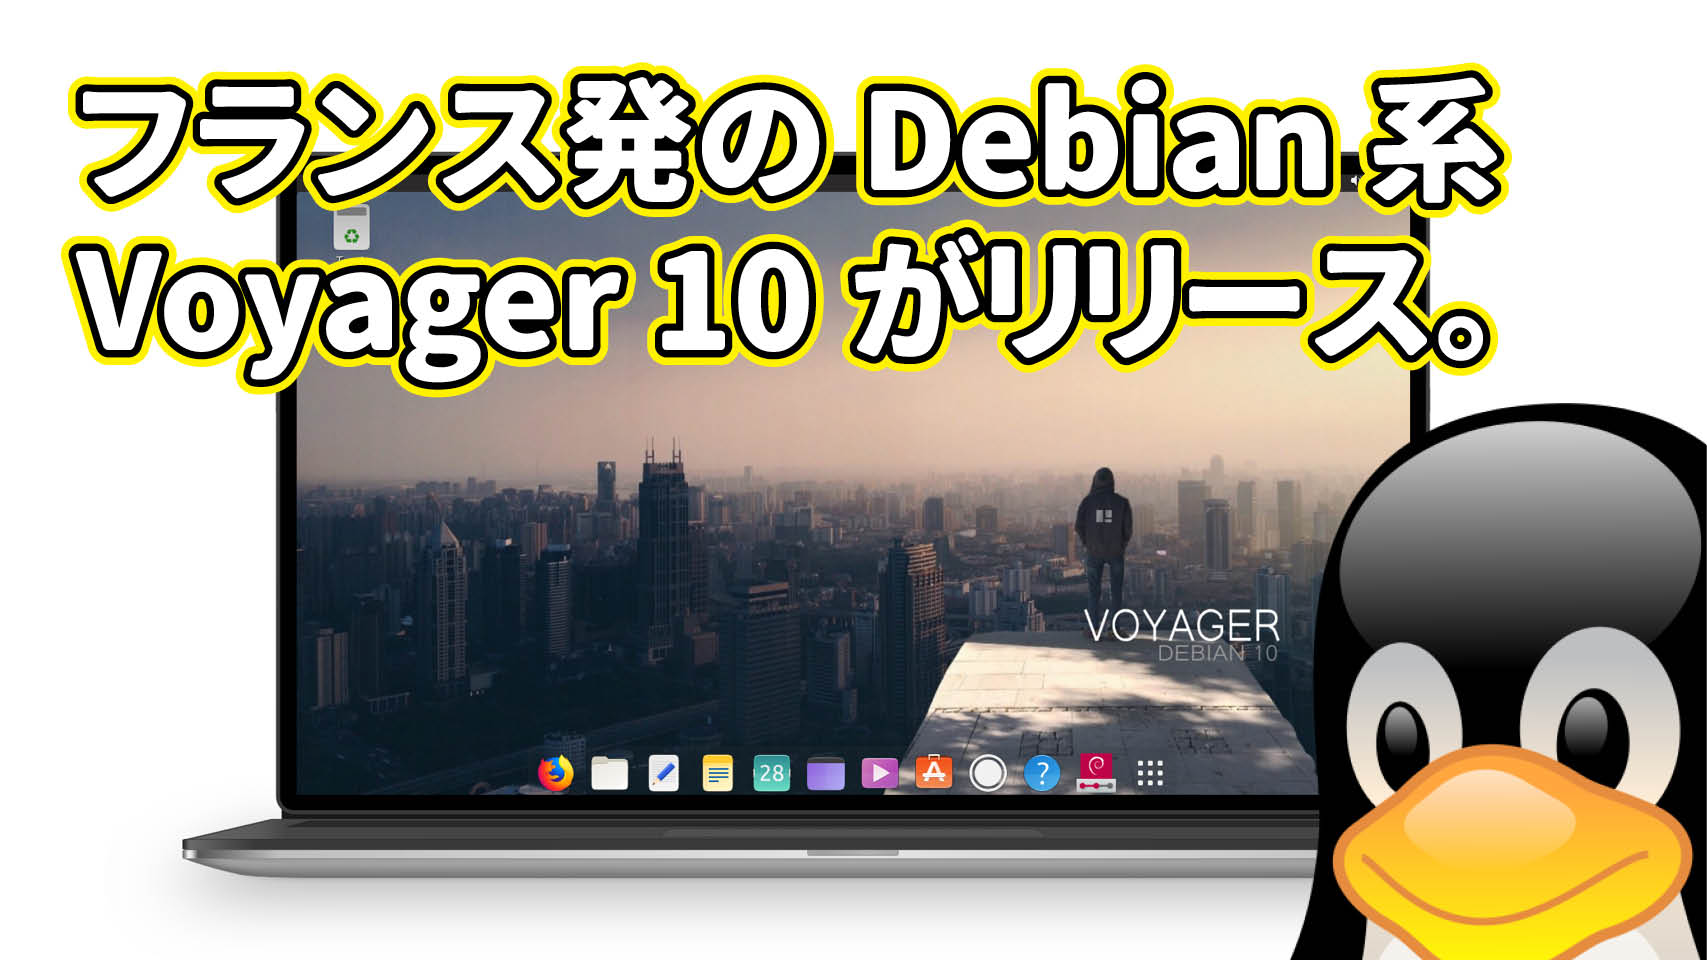 フランス発のDebian系Voyager 10 Debian Buster がリリースされたのでインストールしてみた。